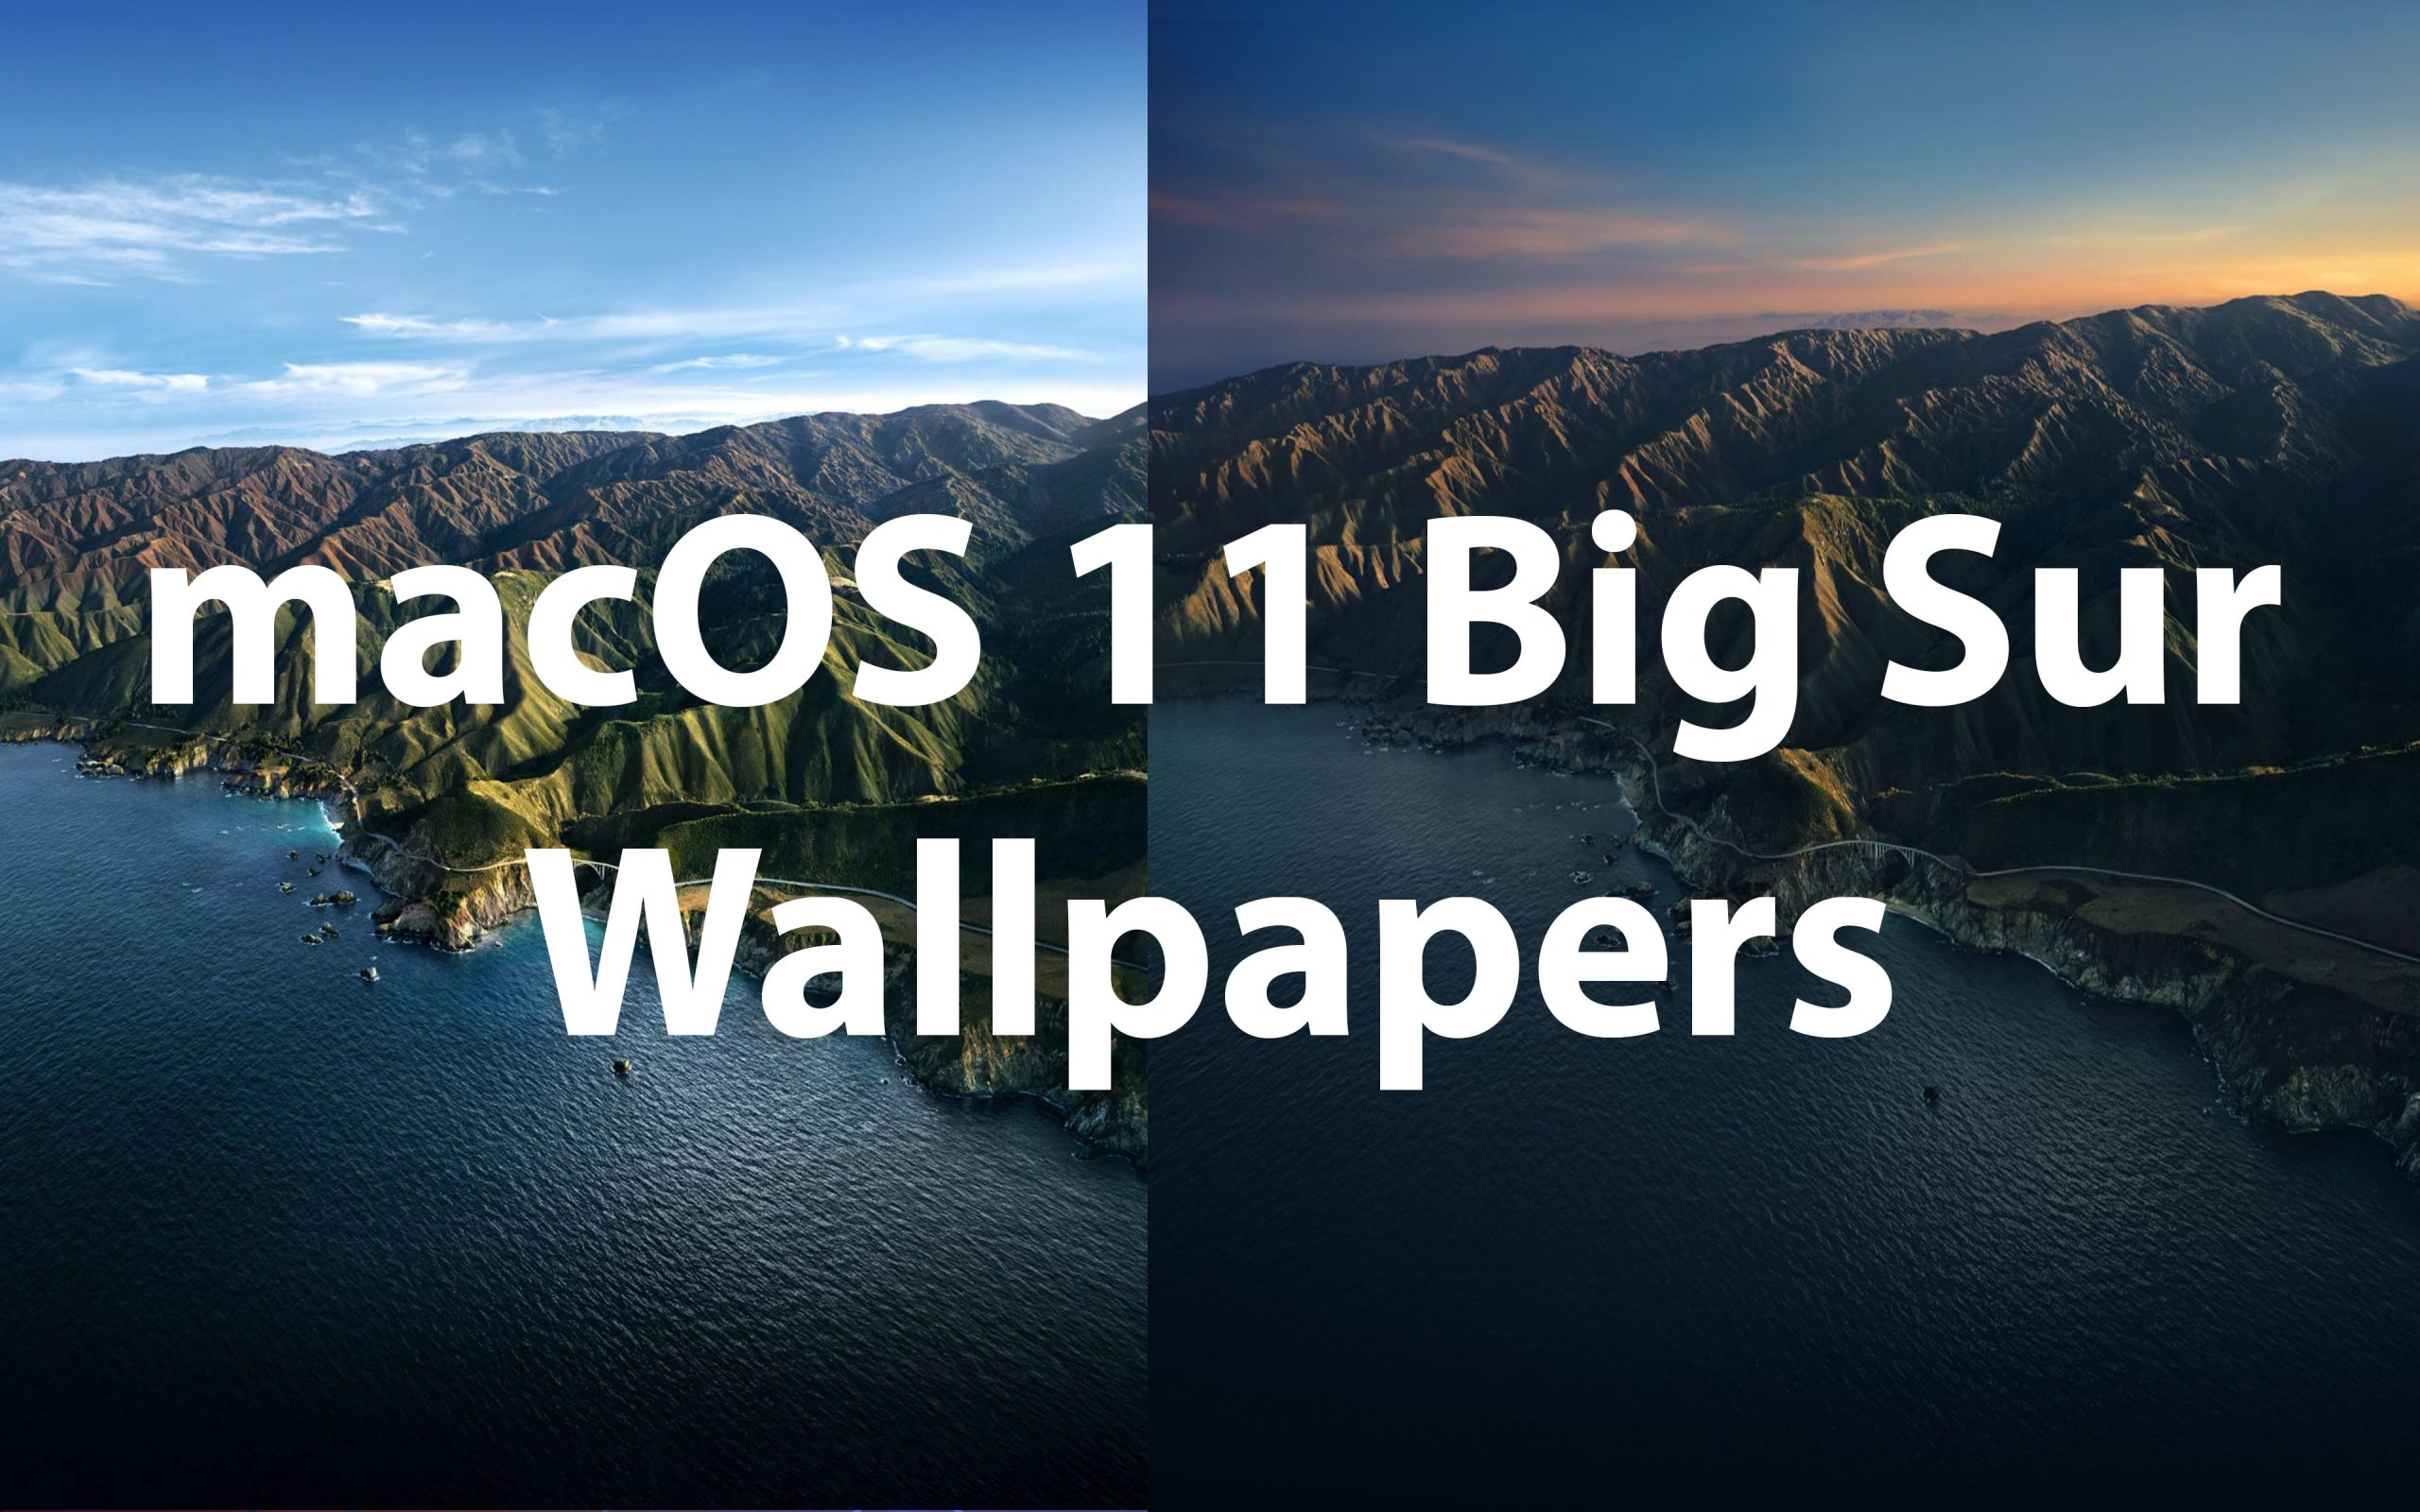 Download MacOS Big Sur HD Wallpapers for Desktop, iPhone & iPad